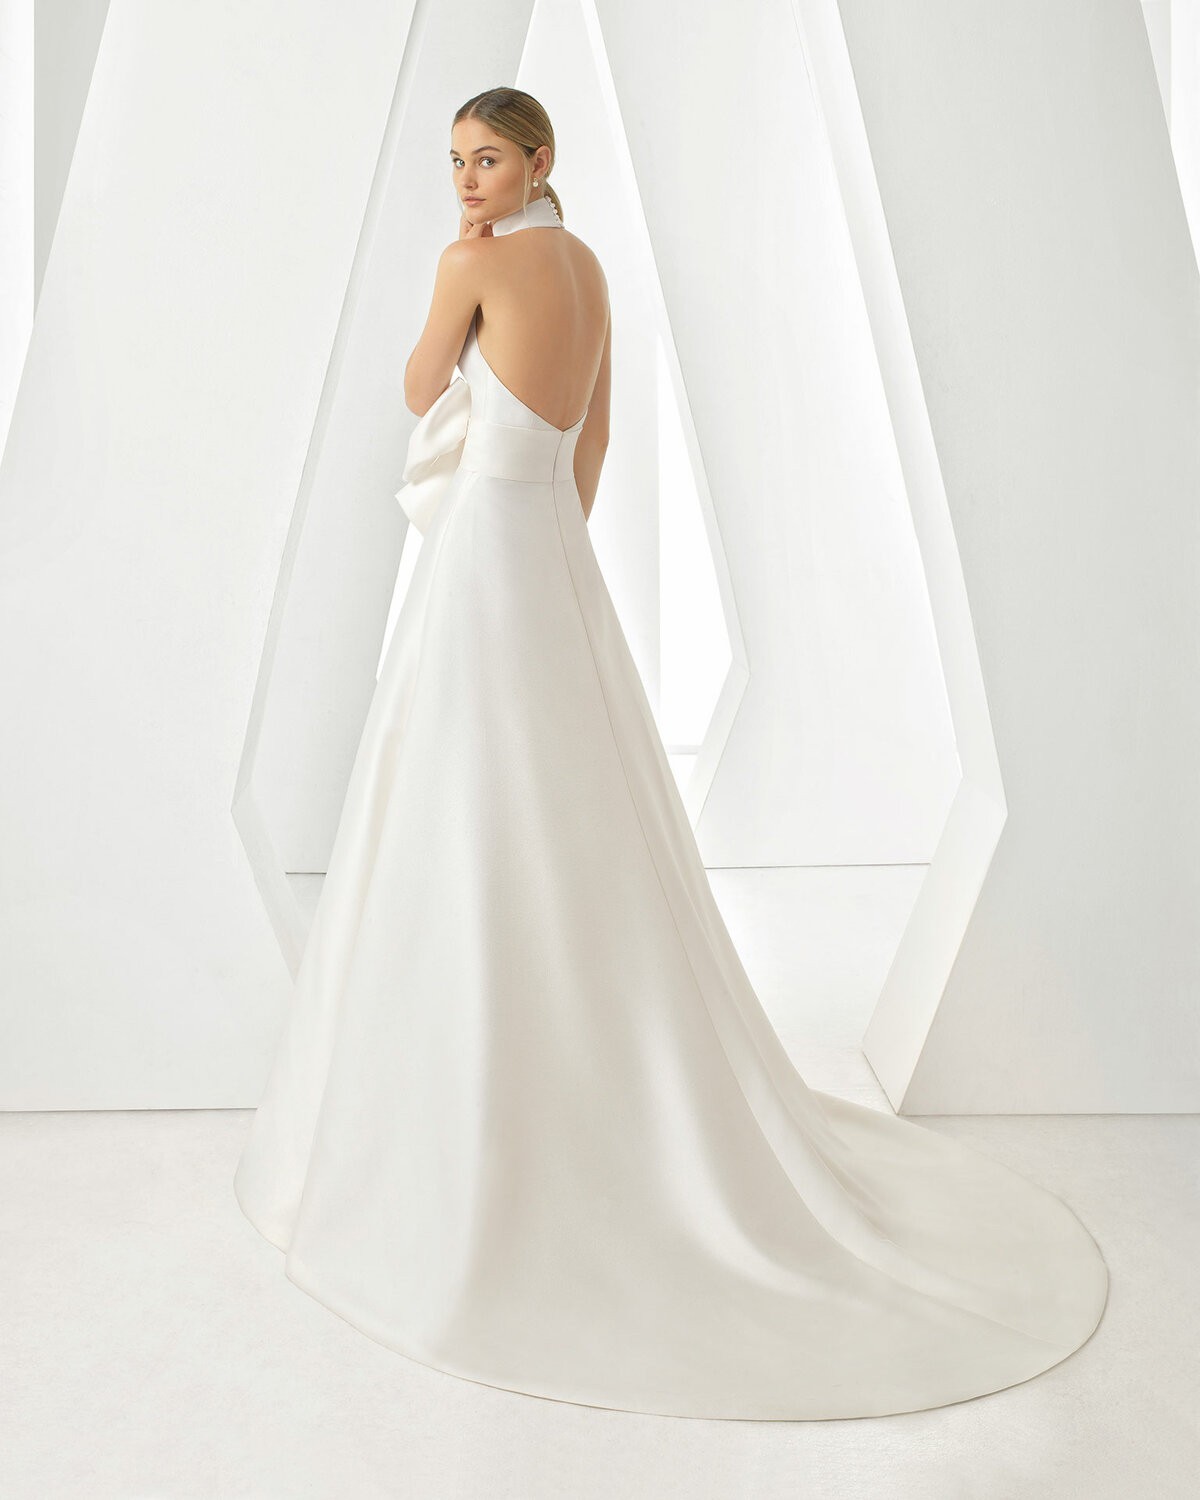 DORES - abito da sposa collezione 2020 - Rosa Clarà